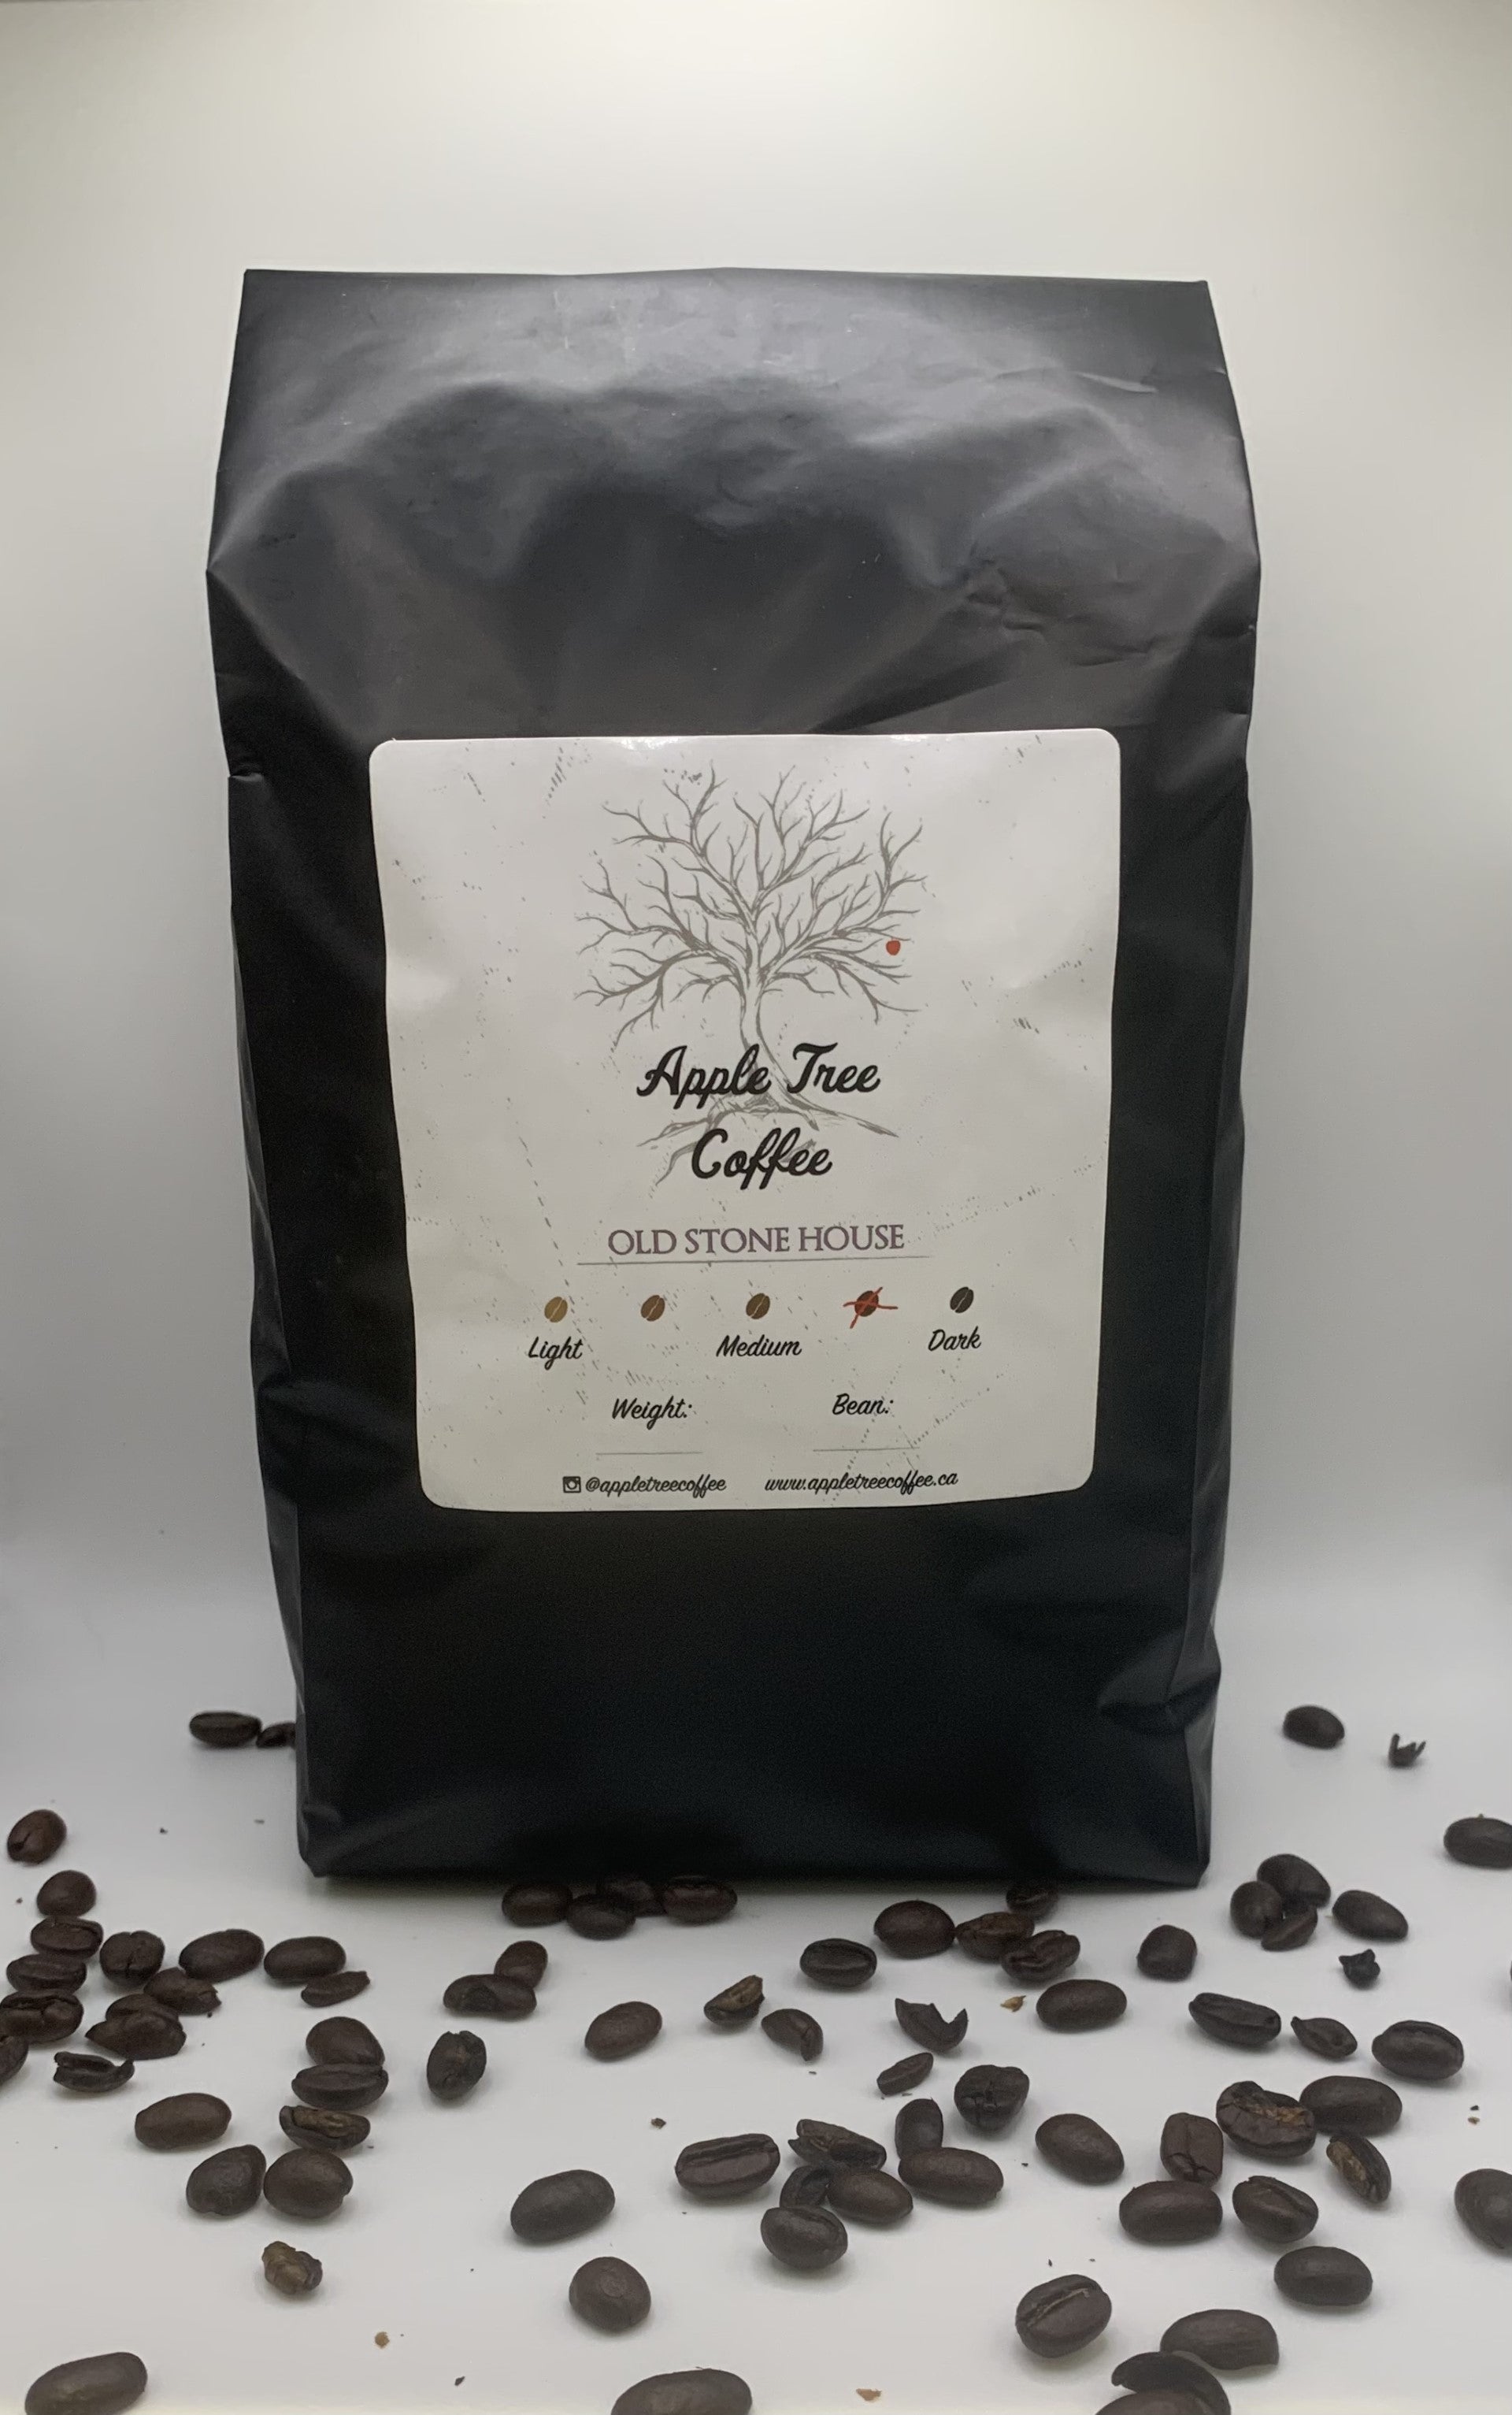 Great Value Dark Roast Ground Coffee, 907 g